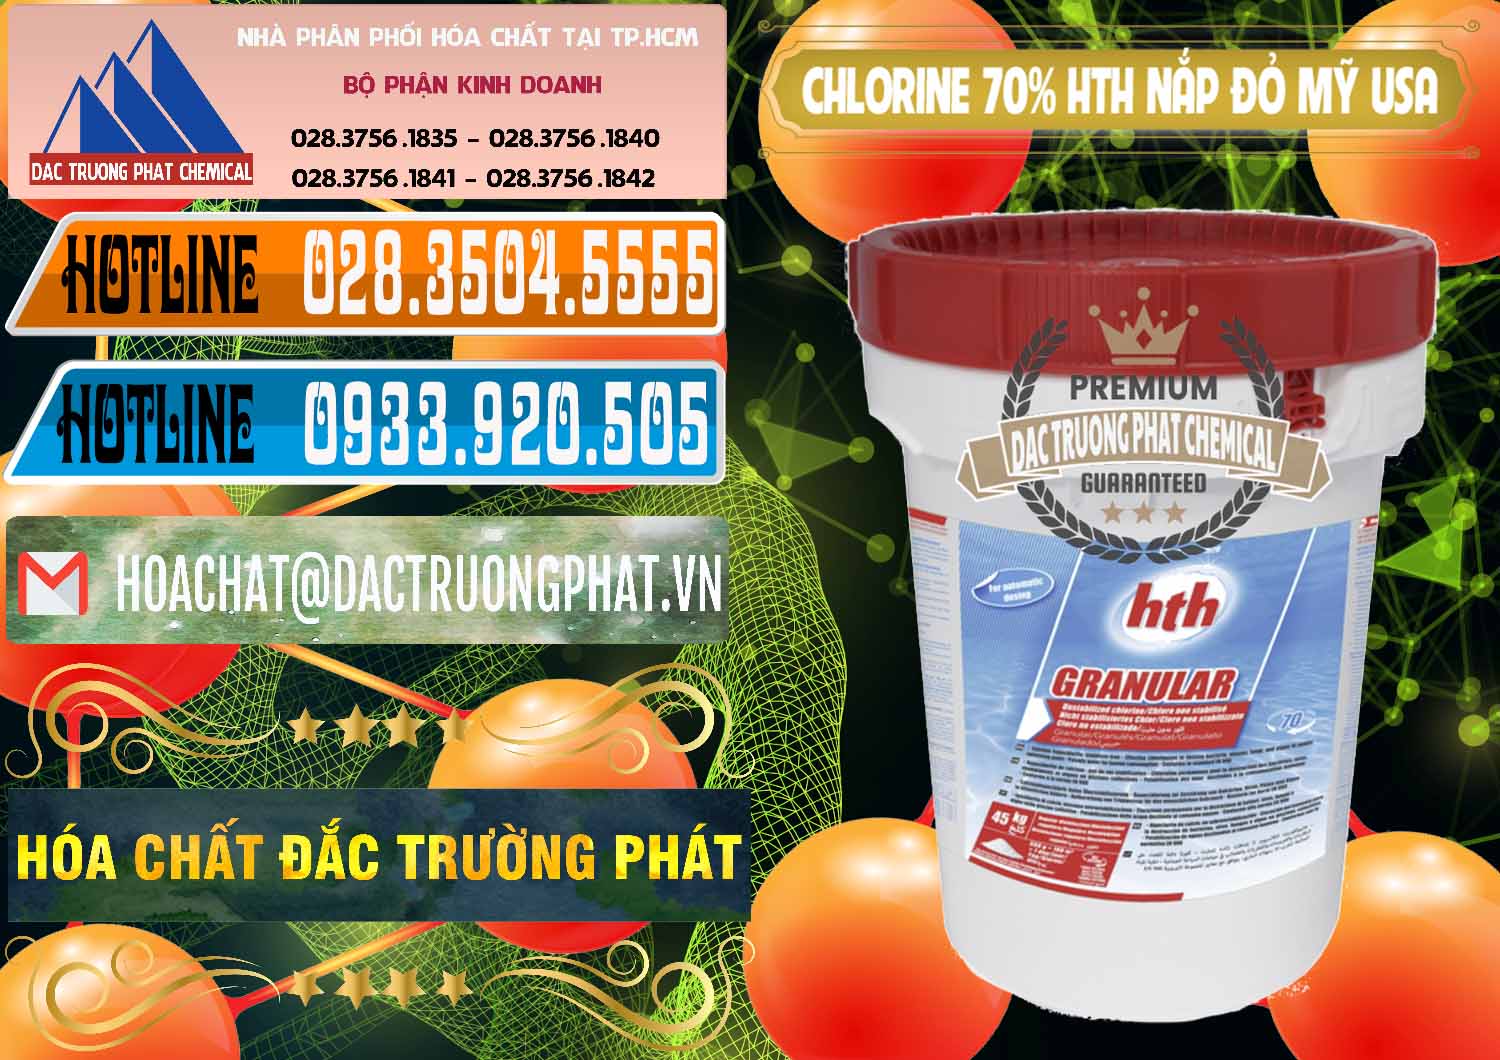 Nơi cung ứng và bán Clorin – Chlorine 70% HTH Nắp Đỏ Mỹ Usa - 0244 - Nơi chuyên cung cấp - kinh doanh hóa chất tại TP.HCM - stmp.net